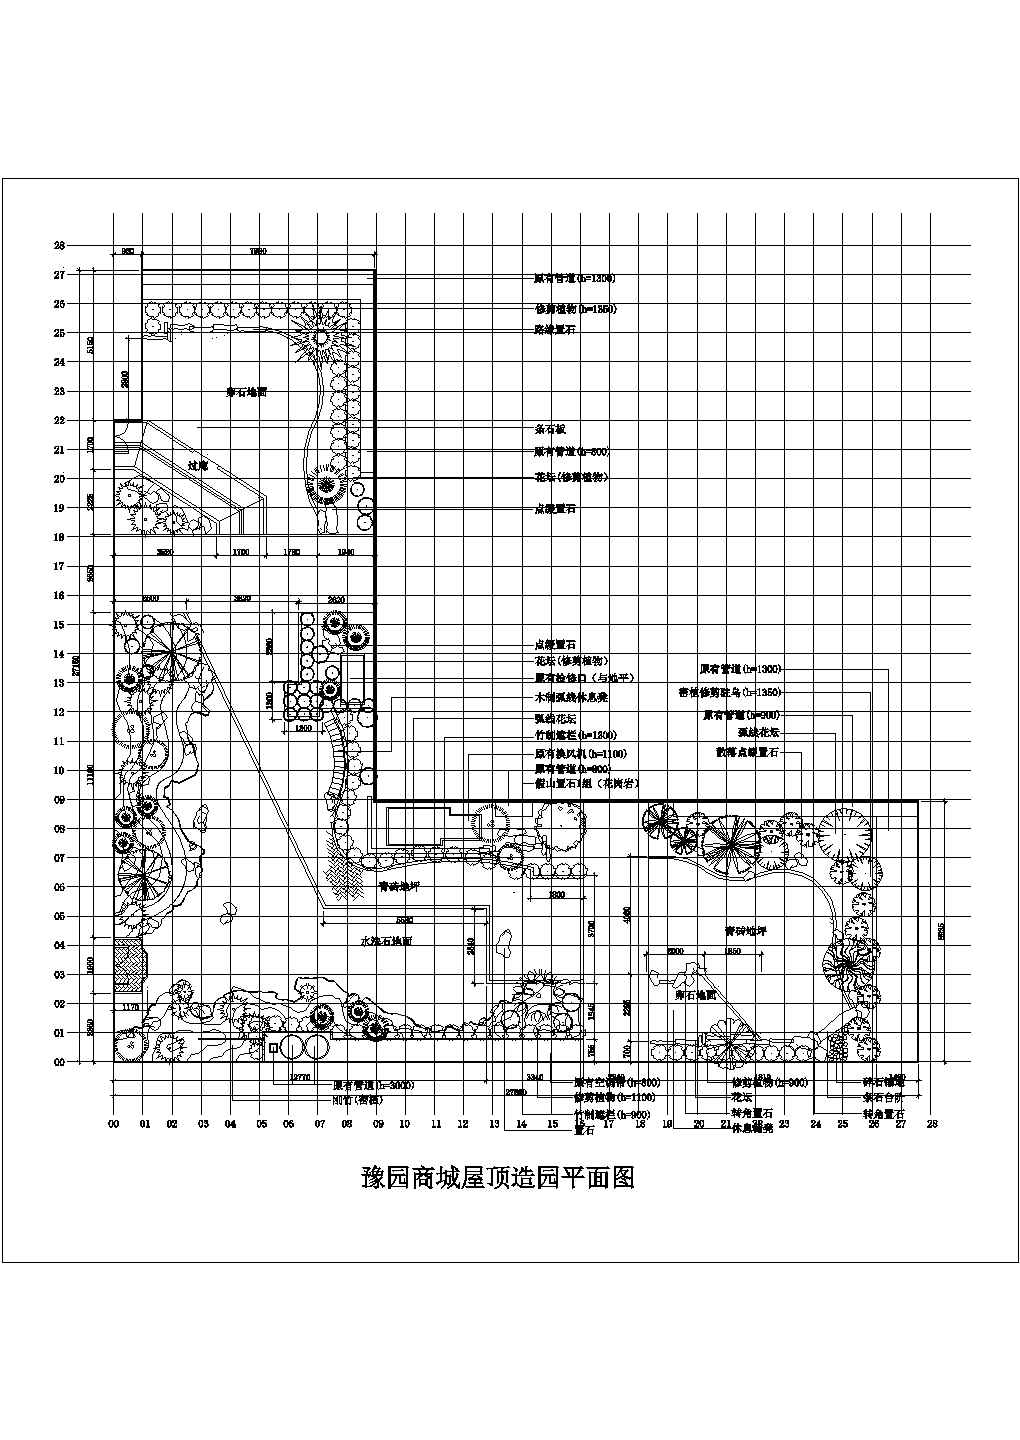 豫园商城凝晖阁屋顶花园绿化规划设计cad总平面方案图